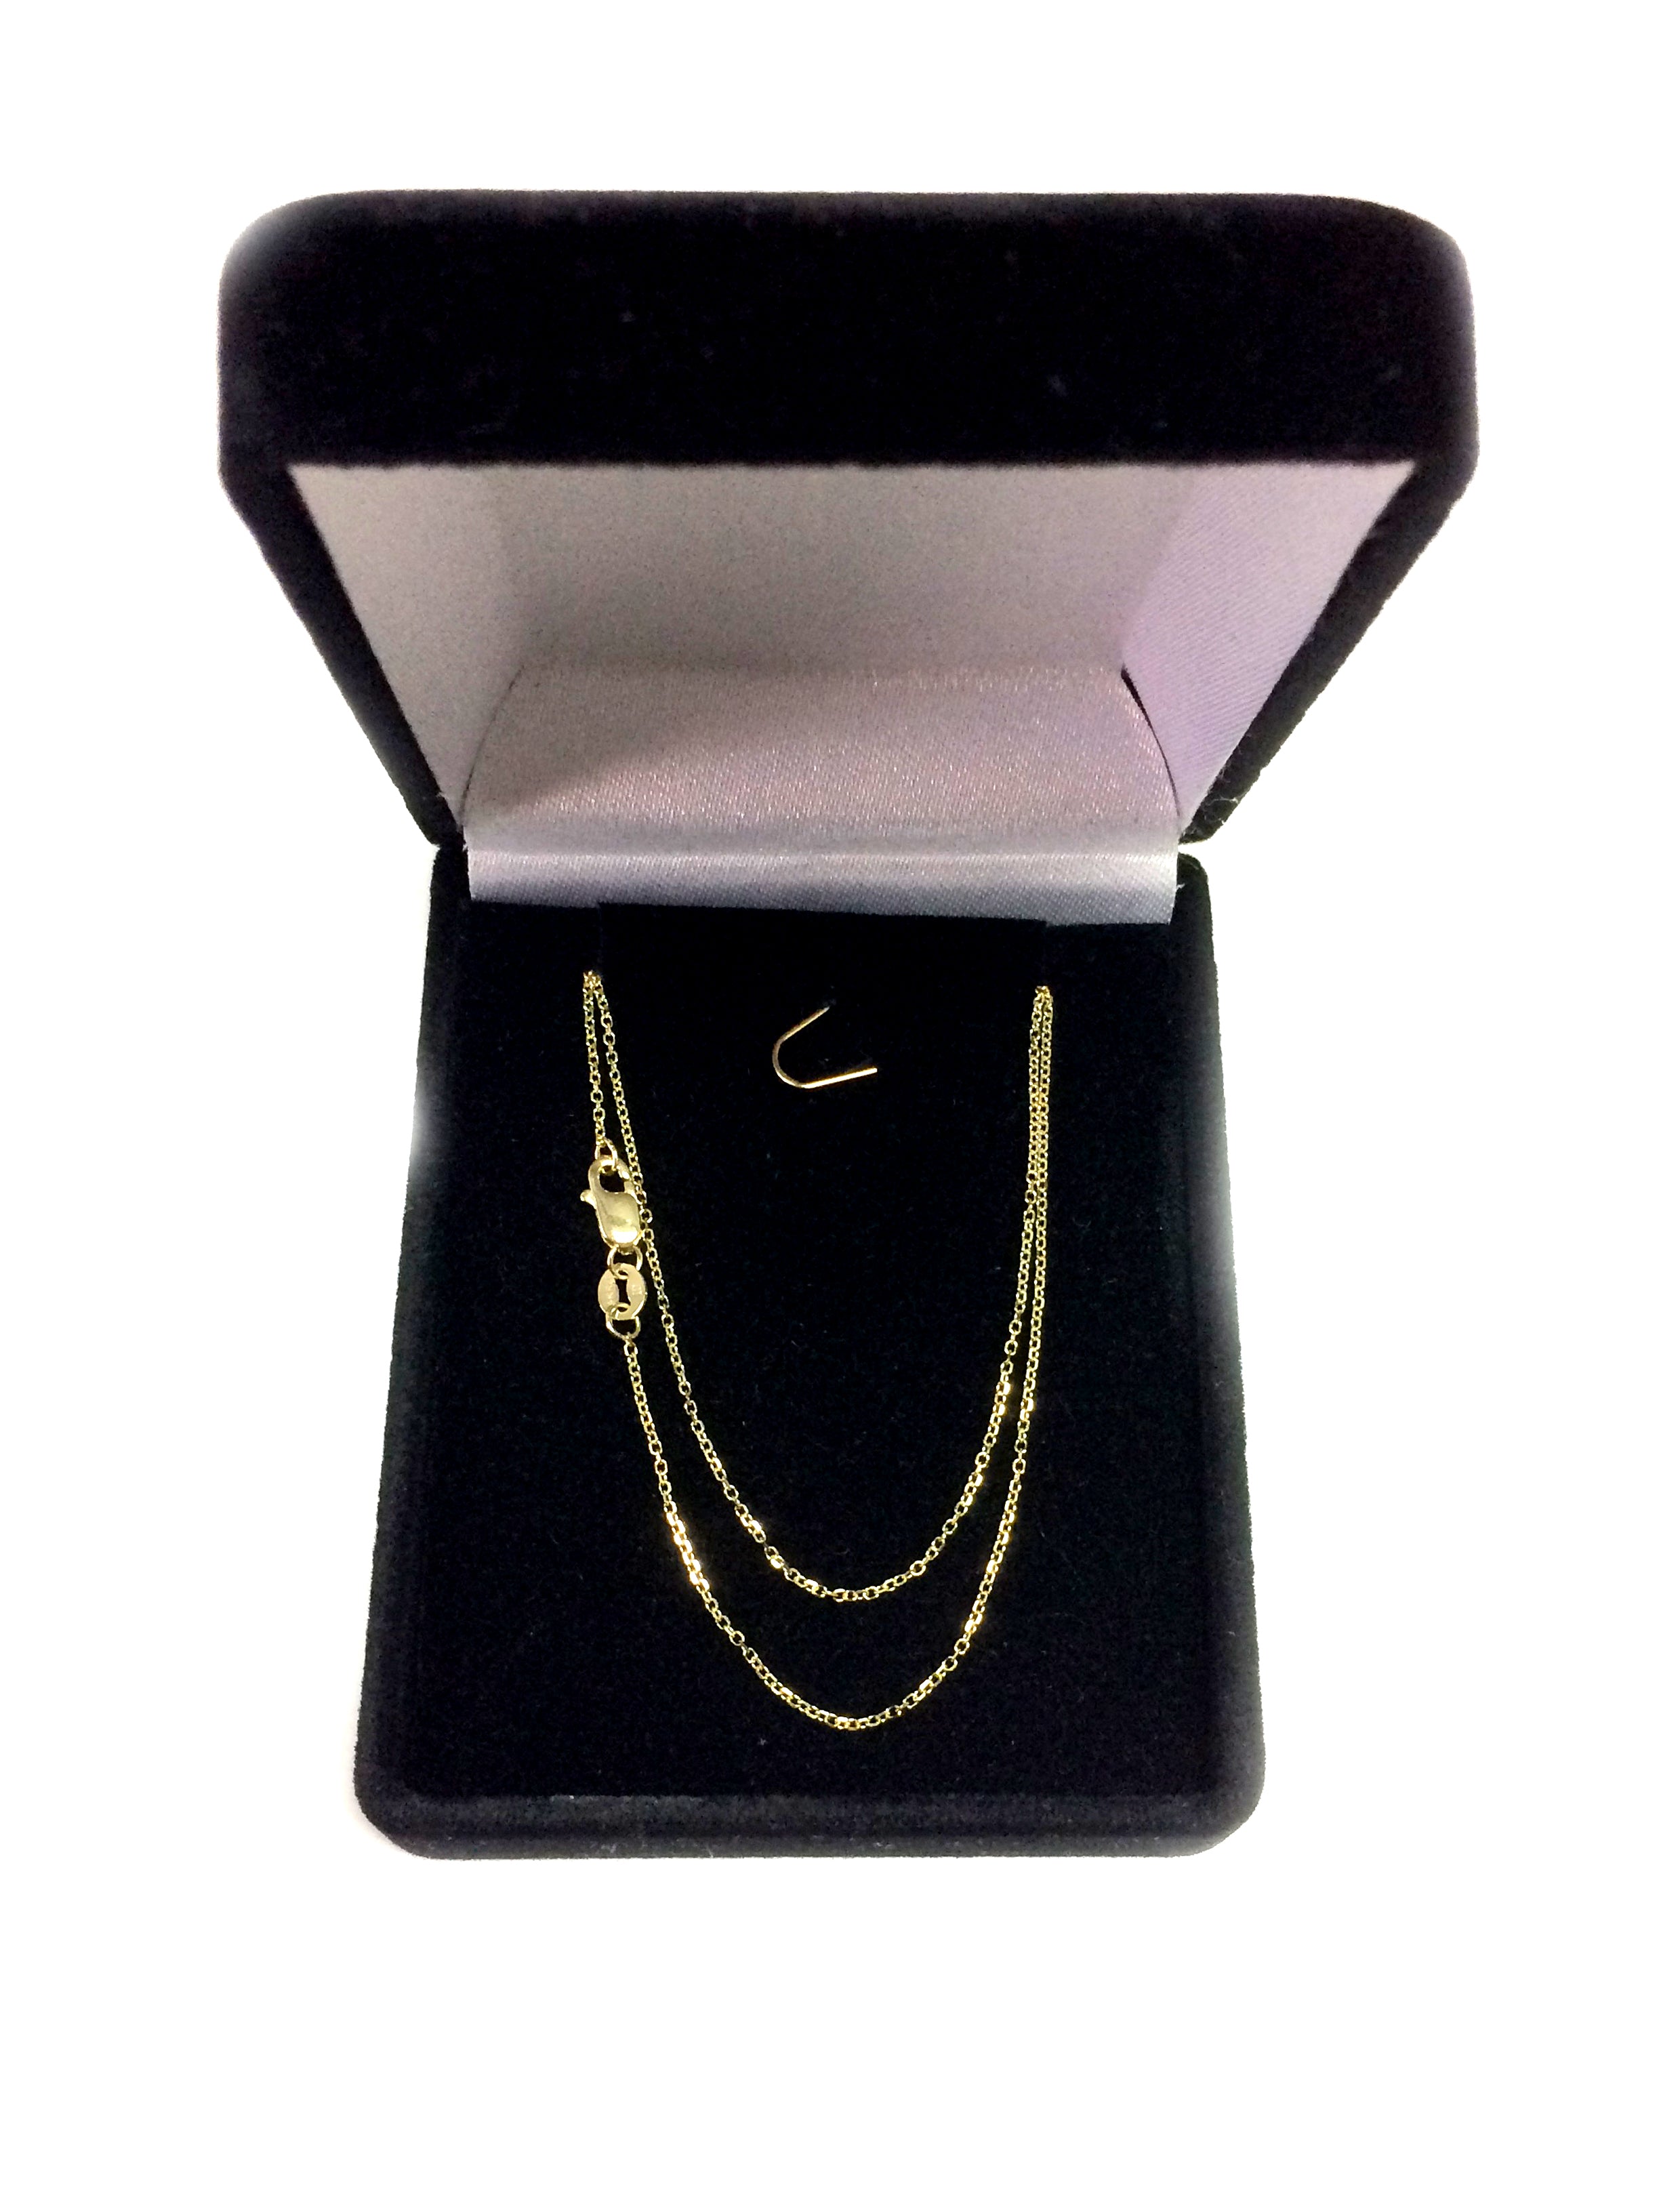 14k gult guld Cable Link Chain Halsband, 0,8 mm fina designersmycken för män och kvinnor